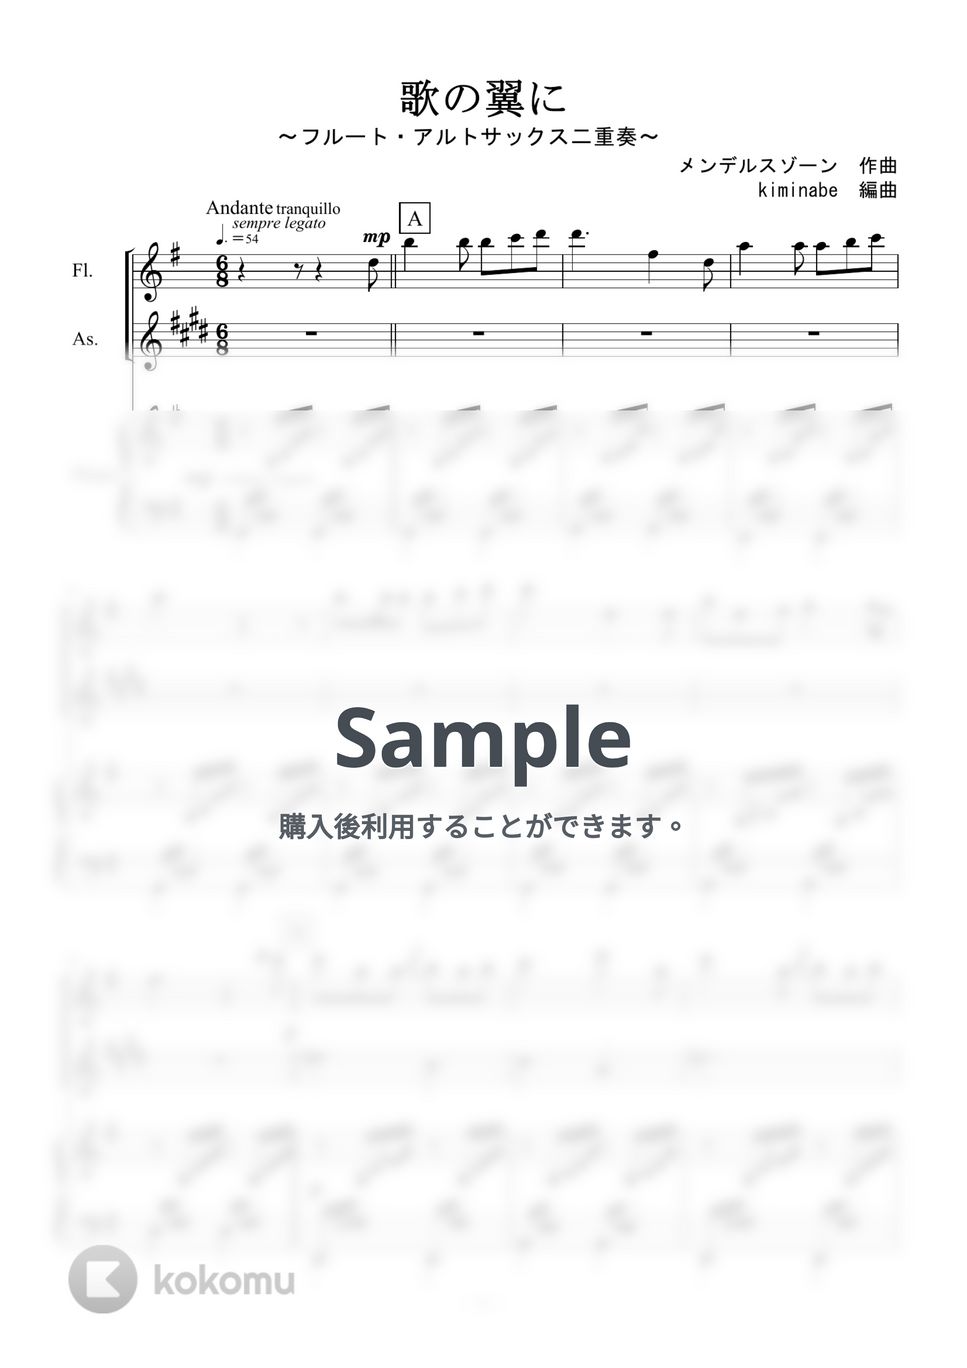 メンデルスゾーン - 歌の翼に (フルート・アルトサックス二重奏) by kiminabe